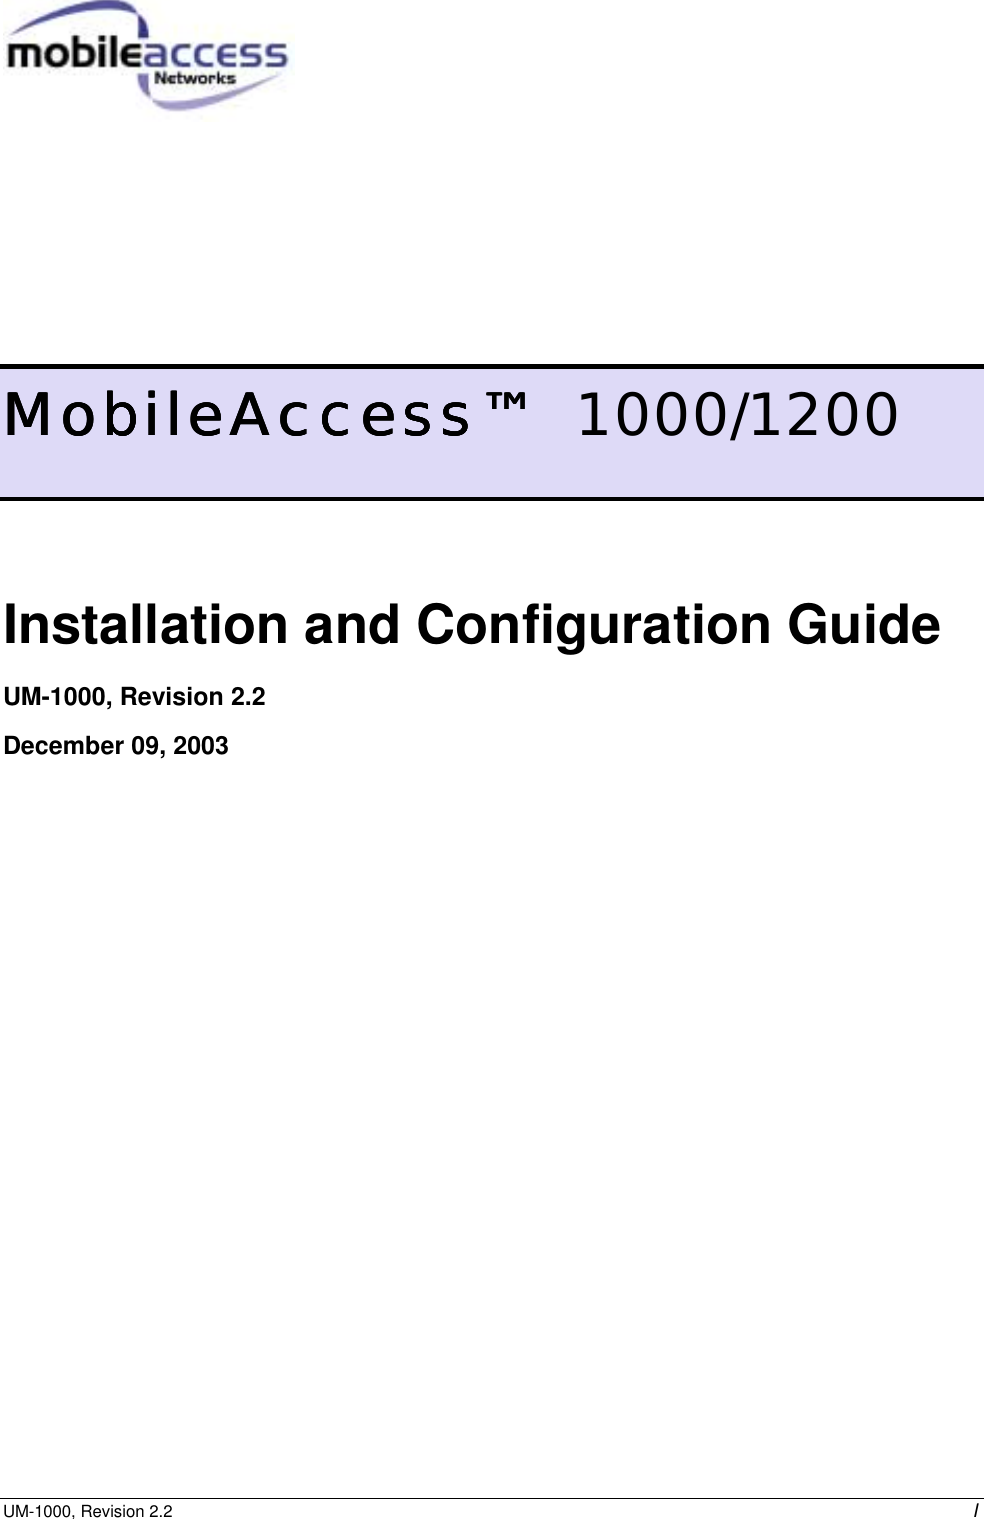 UM-1000, Revision 2.2    I         MobileAccess™MobileAccess™MobileAccess™MobileAccess™  1000/1200 Installation and Configuration Guide UM-1000, Revision 2.2  December 09, 2003  